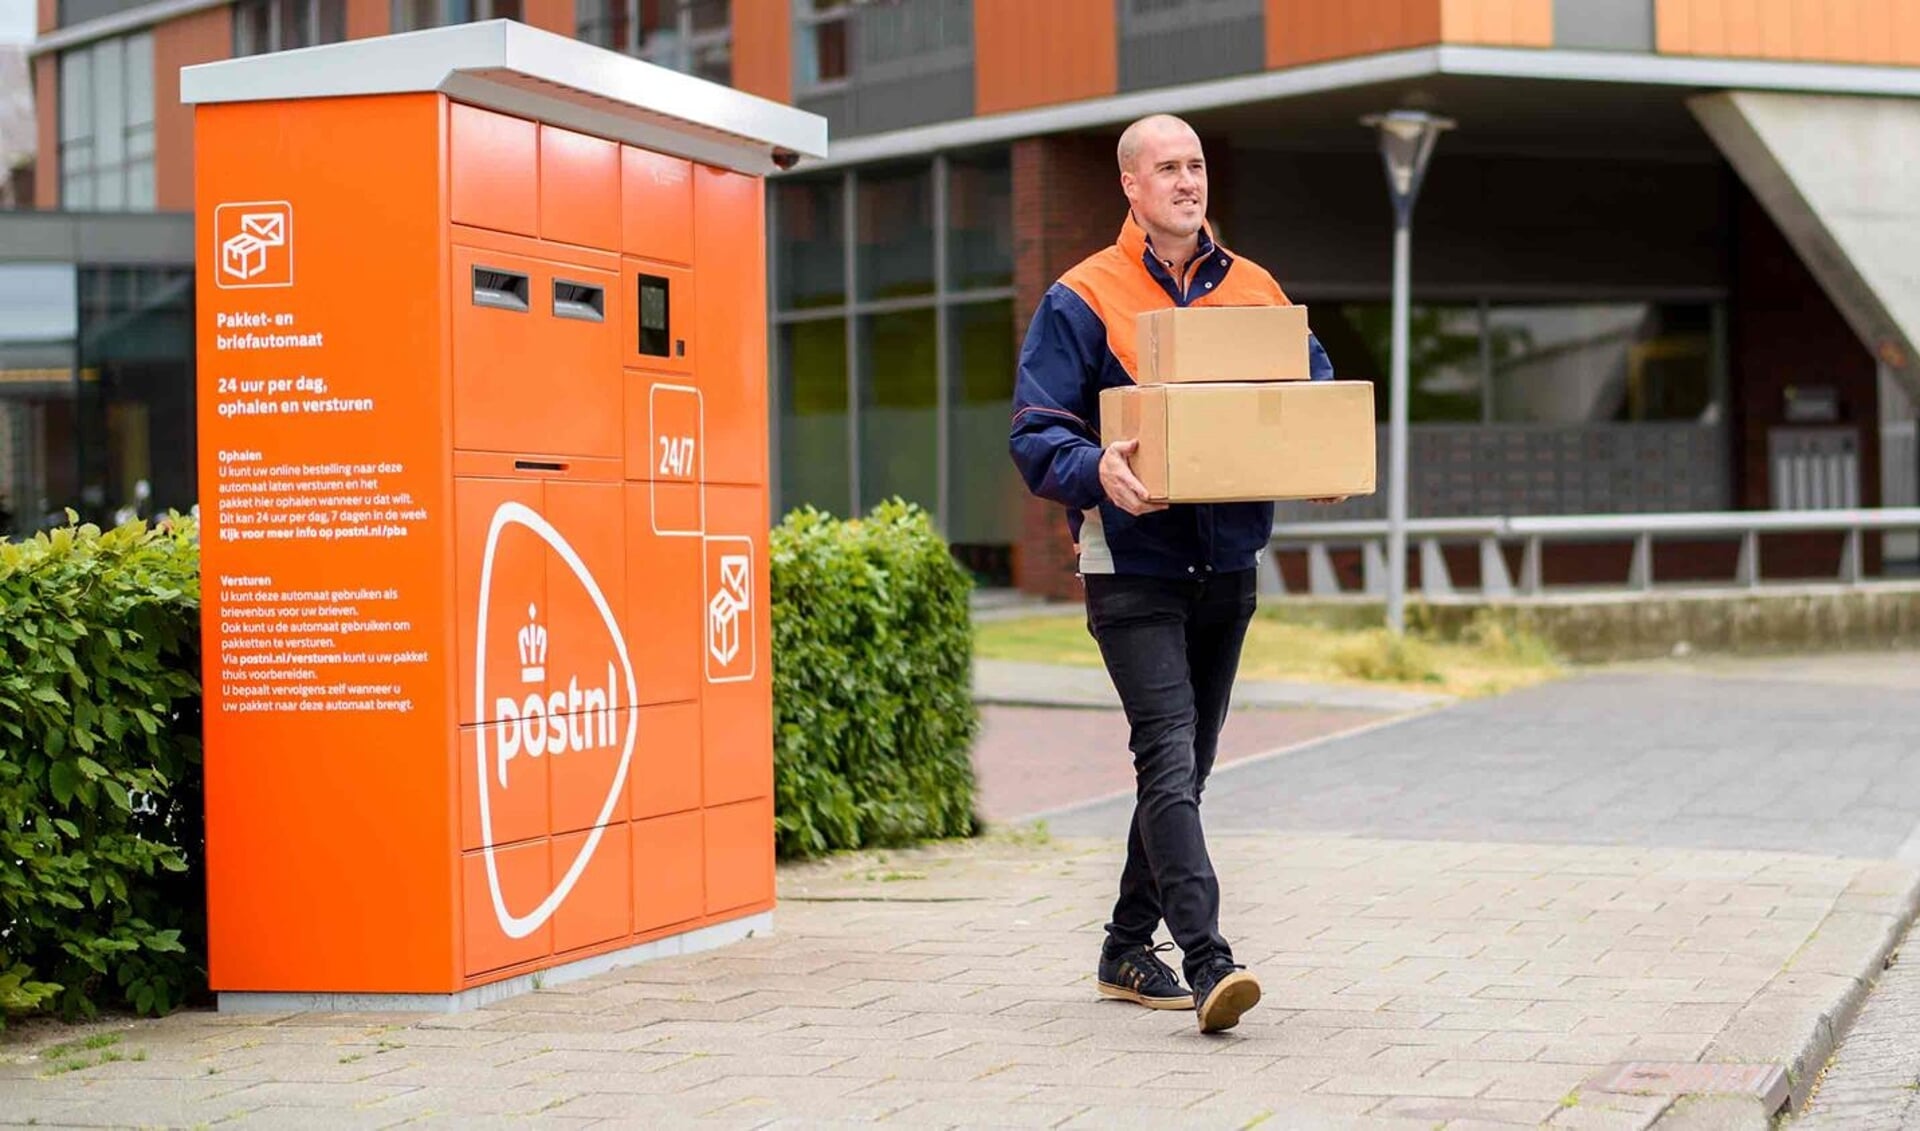 lamp toernooi Onderzoek PostNL opent pakket- en briefautomaat bij tankstation - Weekblad voor Ouder  Amstel | Nieuws uit de regio Ouder Amstel